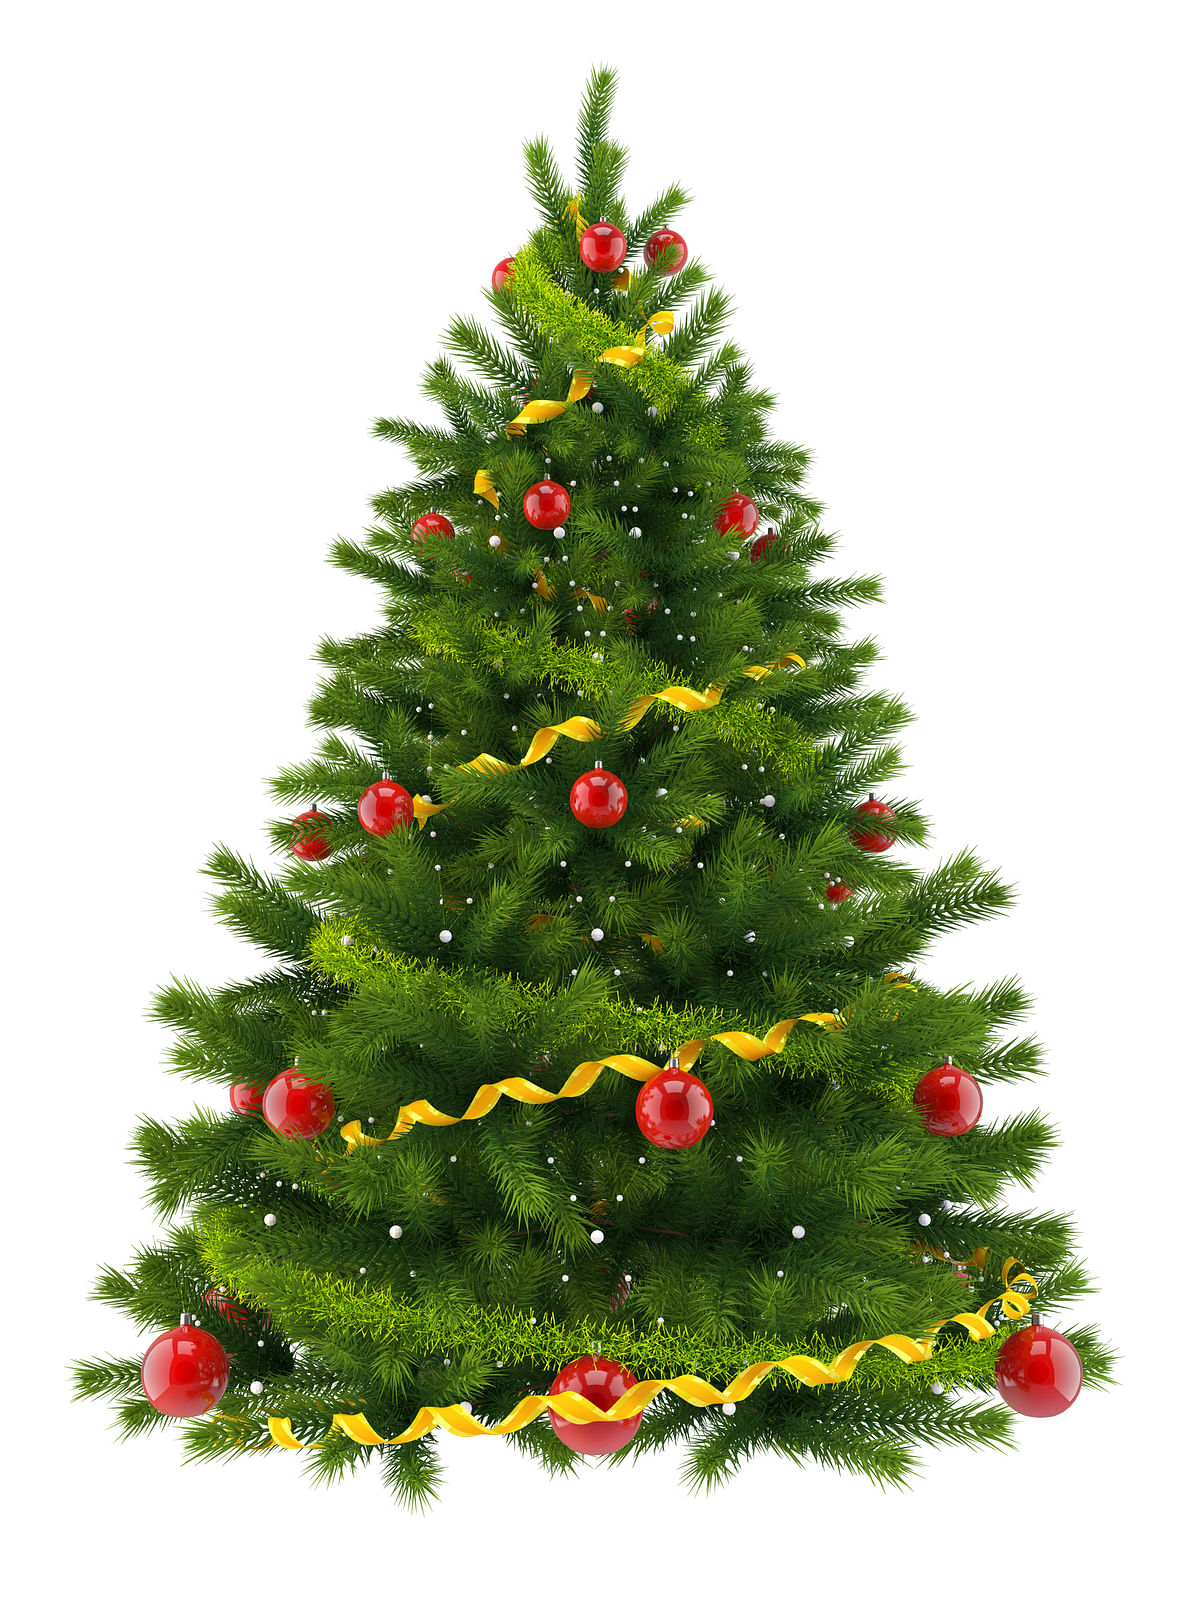 क्रिसमस पर लोग घर को सजाने, पार्टी की तैयारियां और अन्य कामों के अलावा क्रिसमस ट्री को भी सजाते हैं.